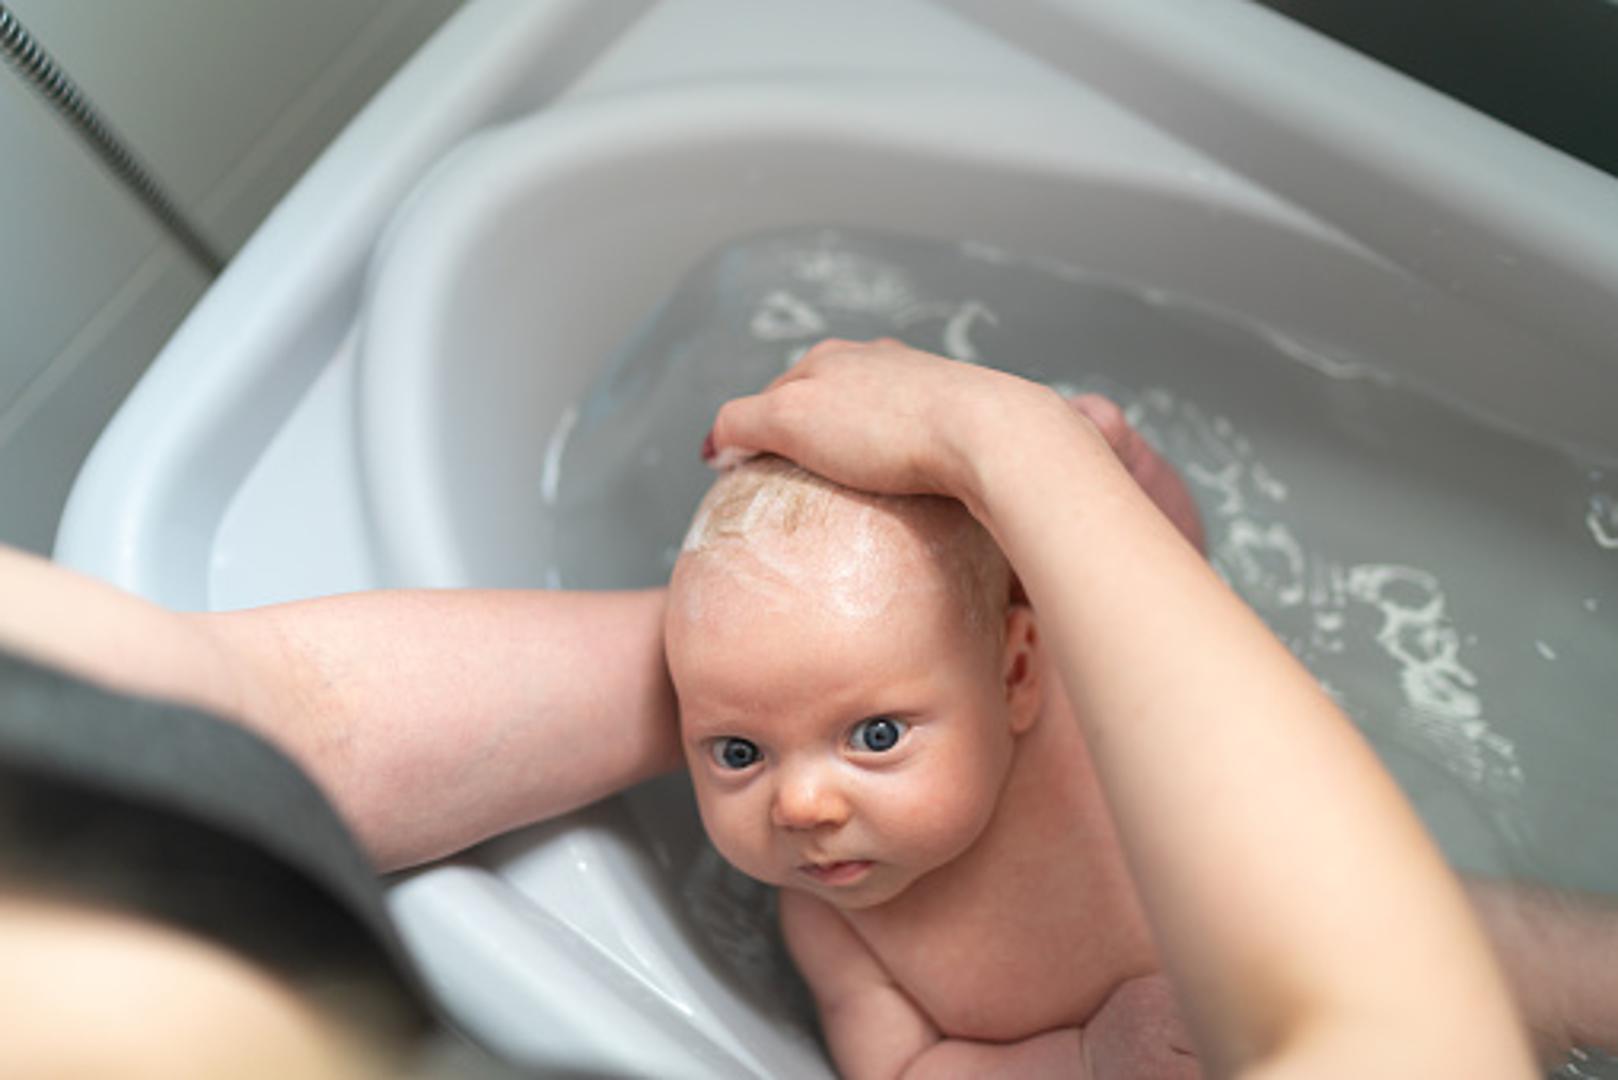 Čistoća i higijena bebe svakako bi trebala biti visoko na listi prioriteta svakog roditelja, no nemojte pretjerivati. Prečesto kupanje bebe može uzrokovati isušivanje i probleme s bebinom, nježnom kožom. Dovoljno je bebu okupati jednom na dan, neki stručnjaci tvrde da je bolje bebu kupati svaki drugi dan. No, svakako je prije spavanja možete prebrisati vlažnom mekanom krpom.